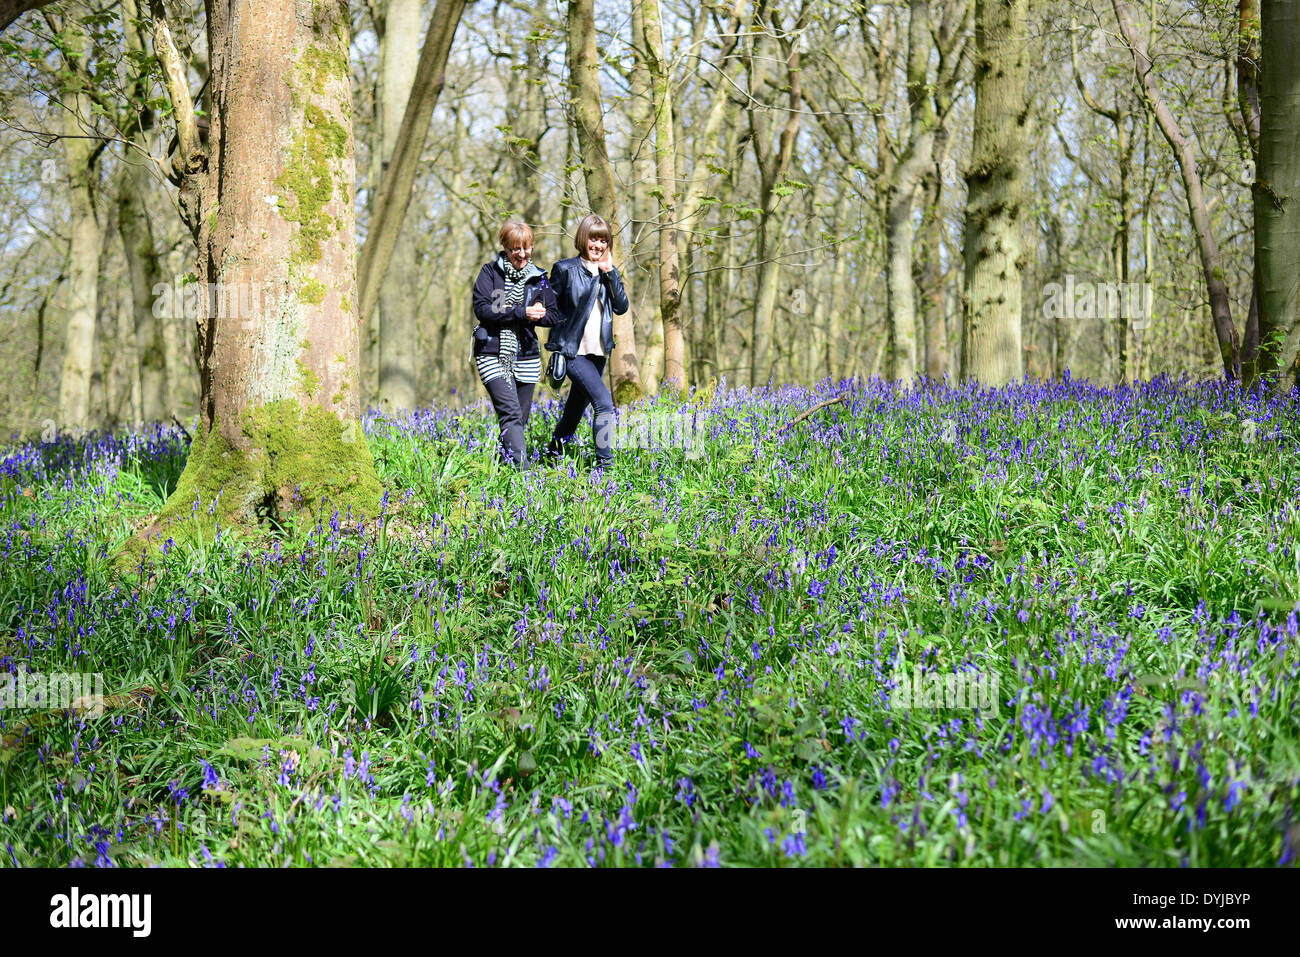 Badby, Northamptonshire, Angleterre. 19 avril 2014. Deux personnes marcher parmi les jacinthes des bois, à Badby Badby, Northamptonshire, Angleterre. Crédit : Jamie Gray/Alamy Live News Banque D'Images